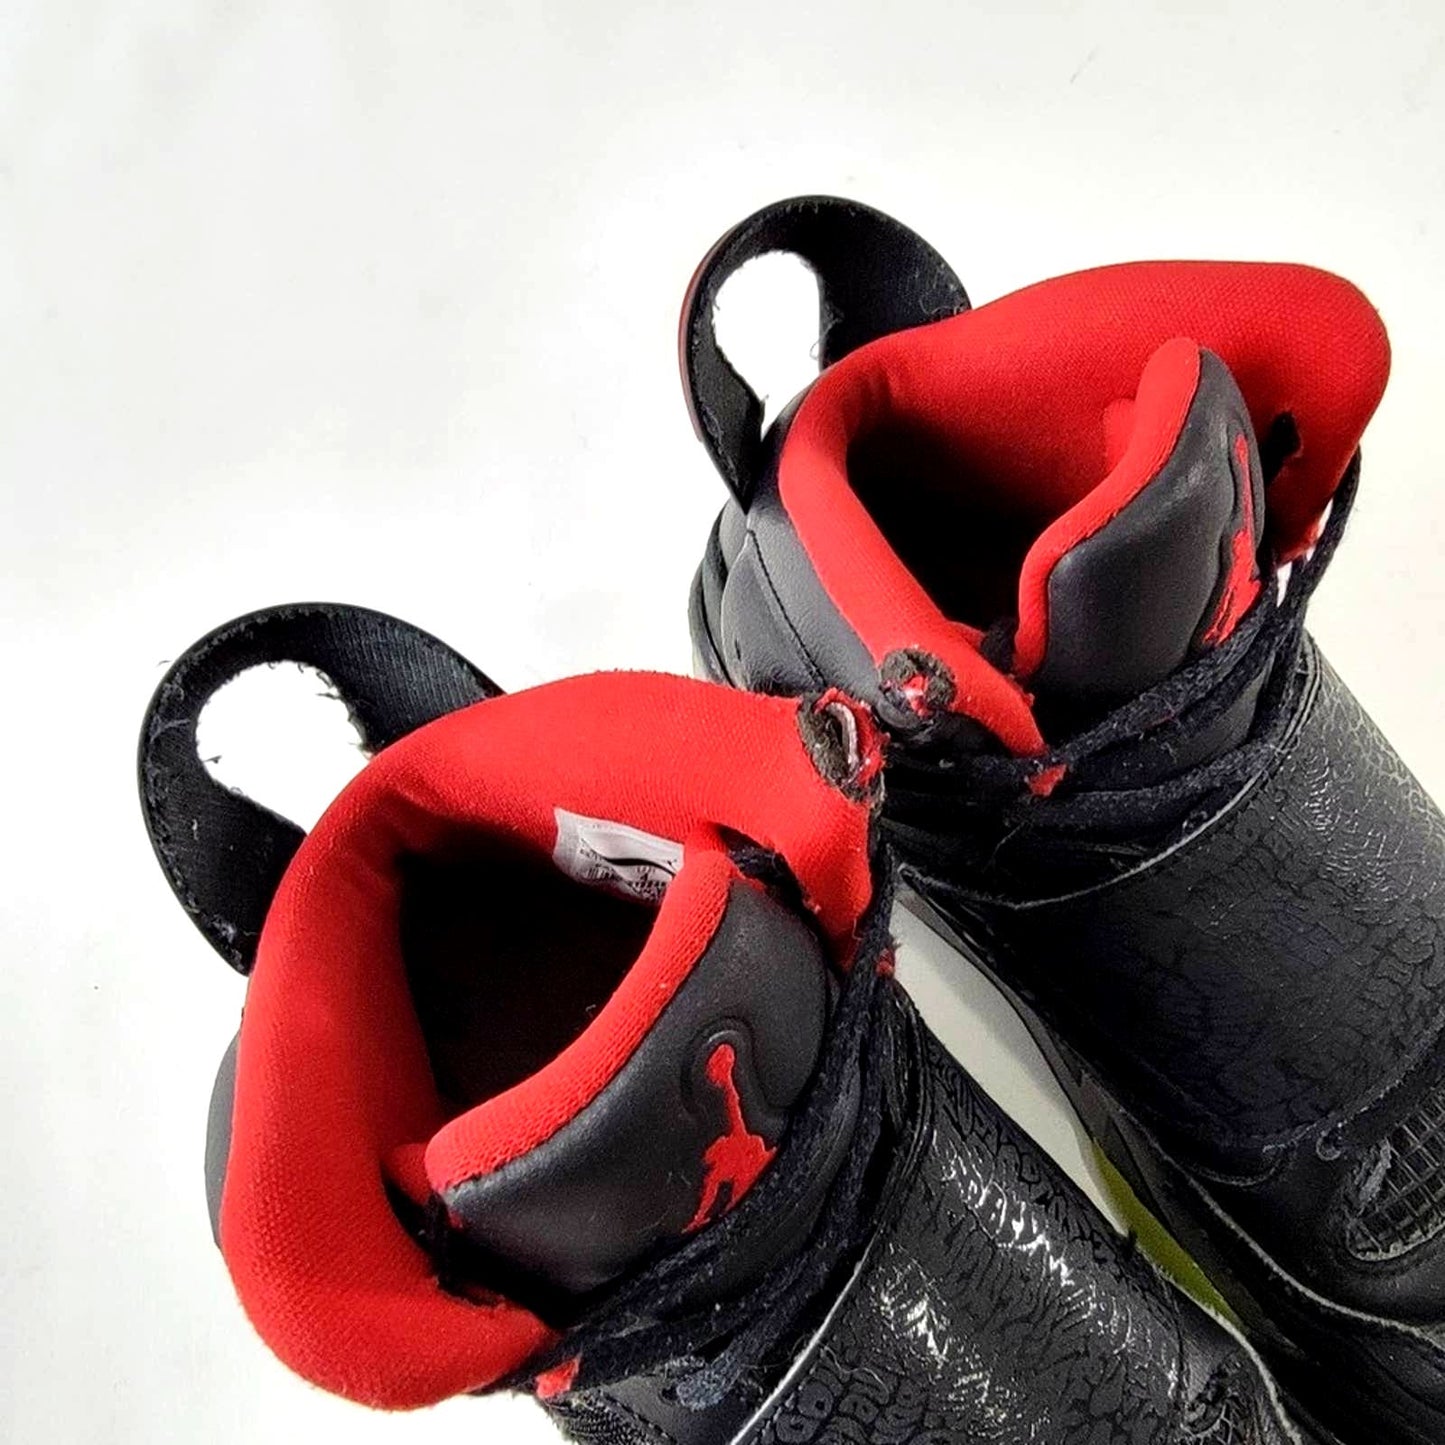 Nike Air Jordan Son of Mars (BG)